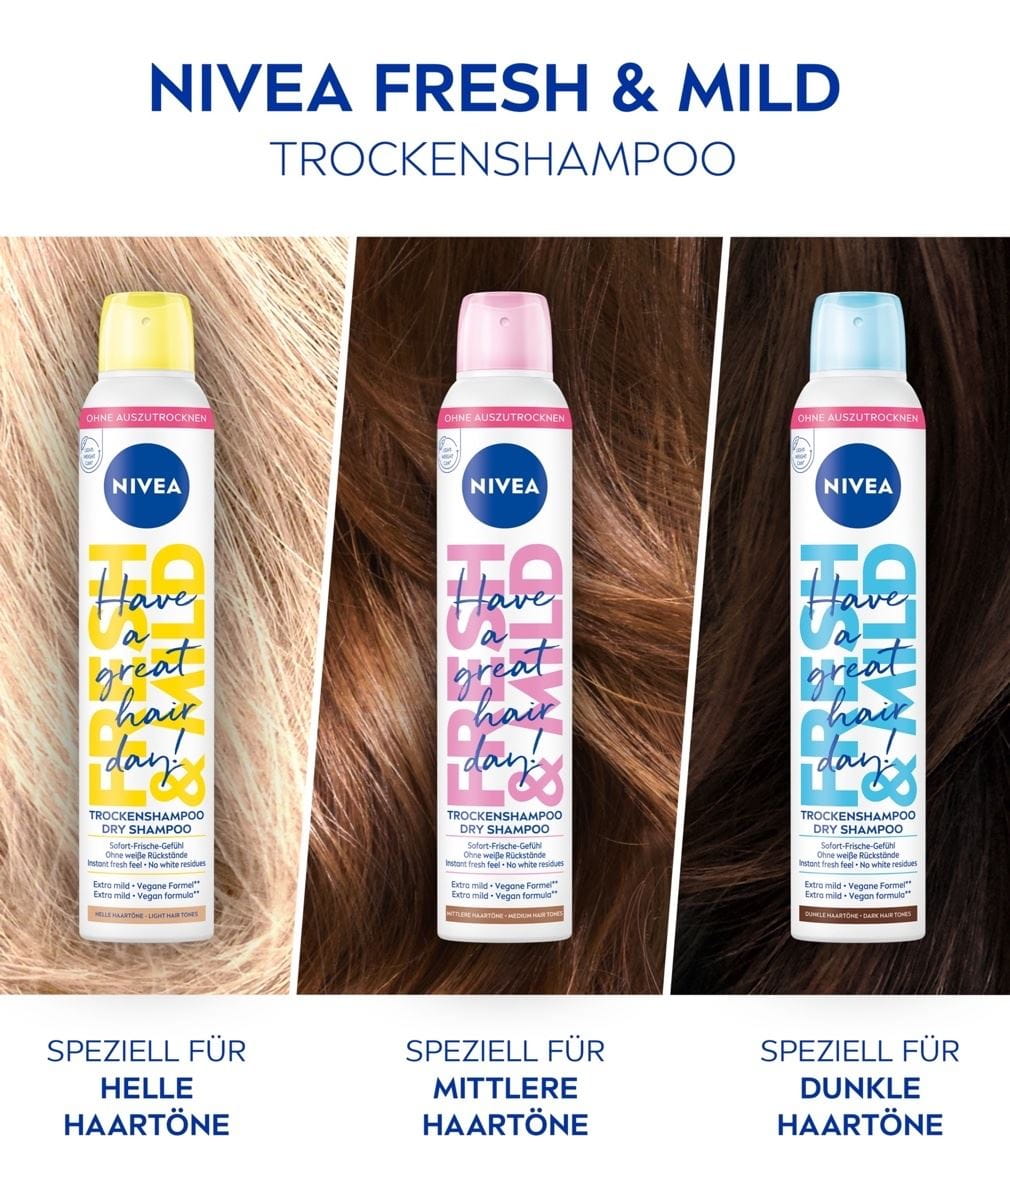 NIVEA Fresh & Mild Trockenshampoo Produktübersicht Haartöne